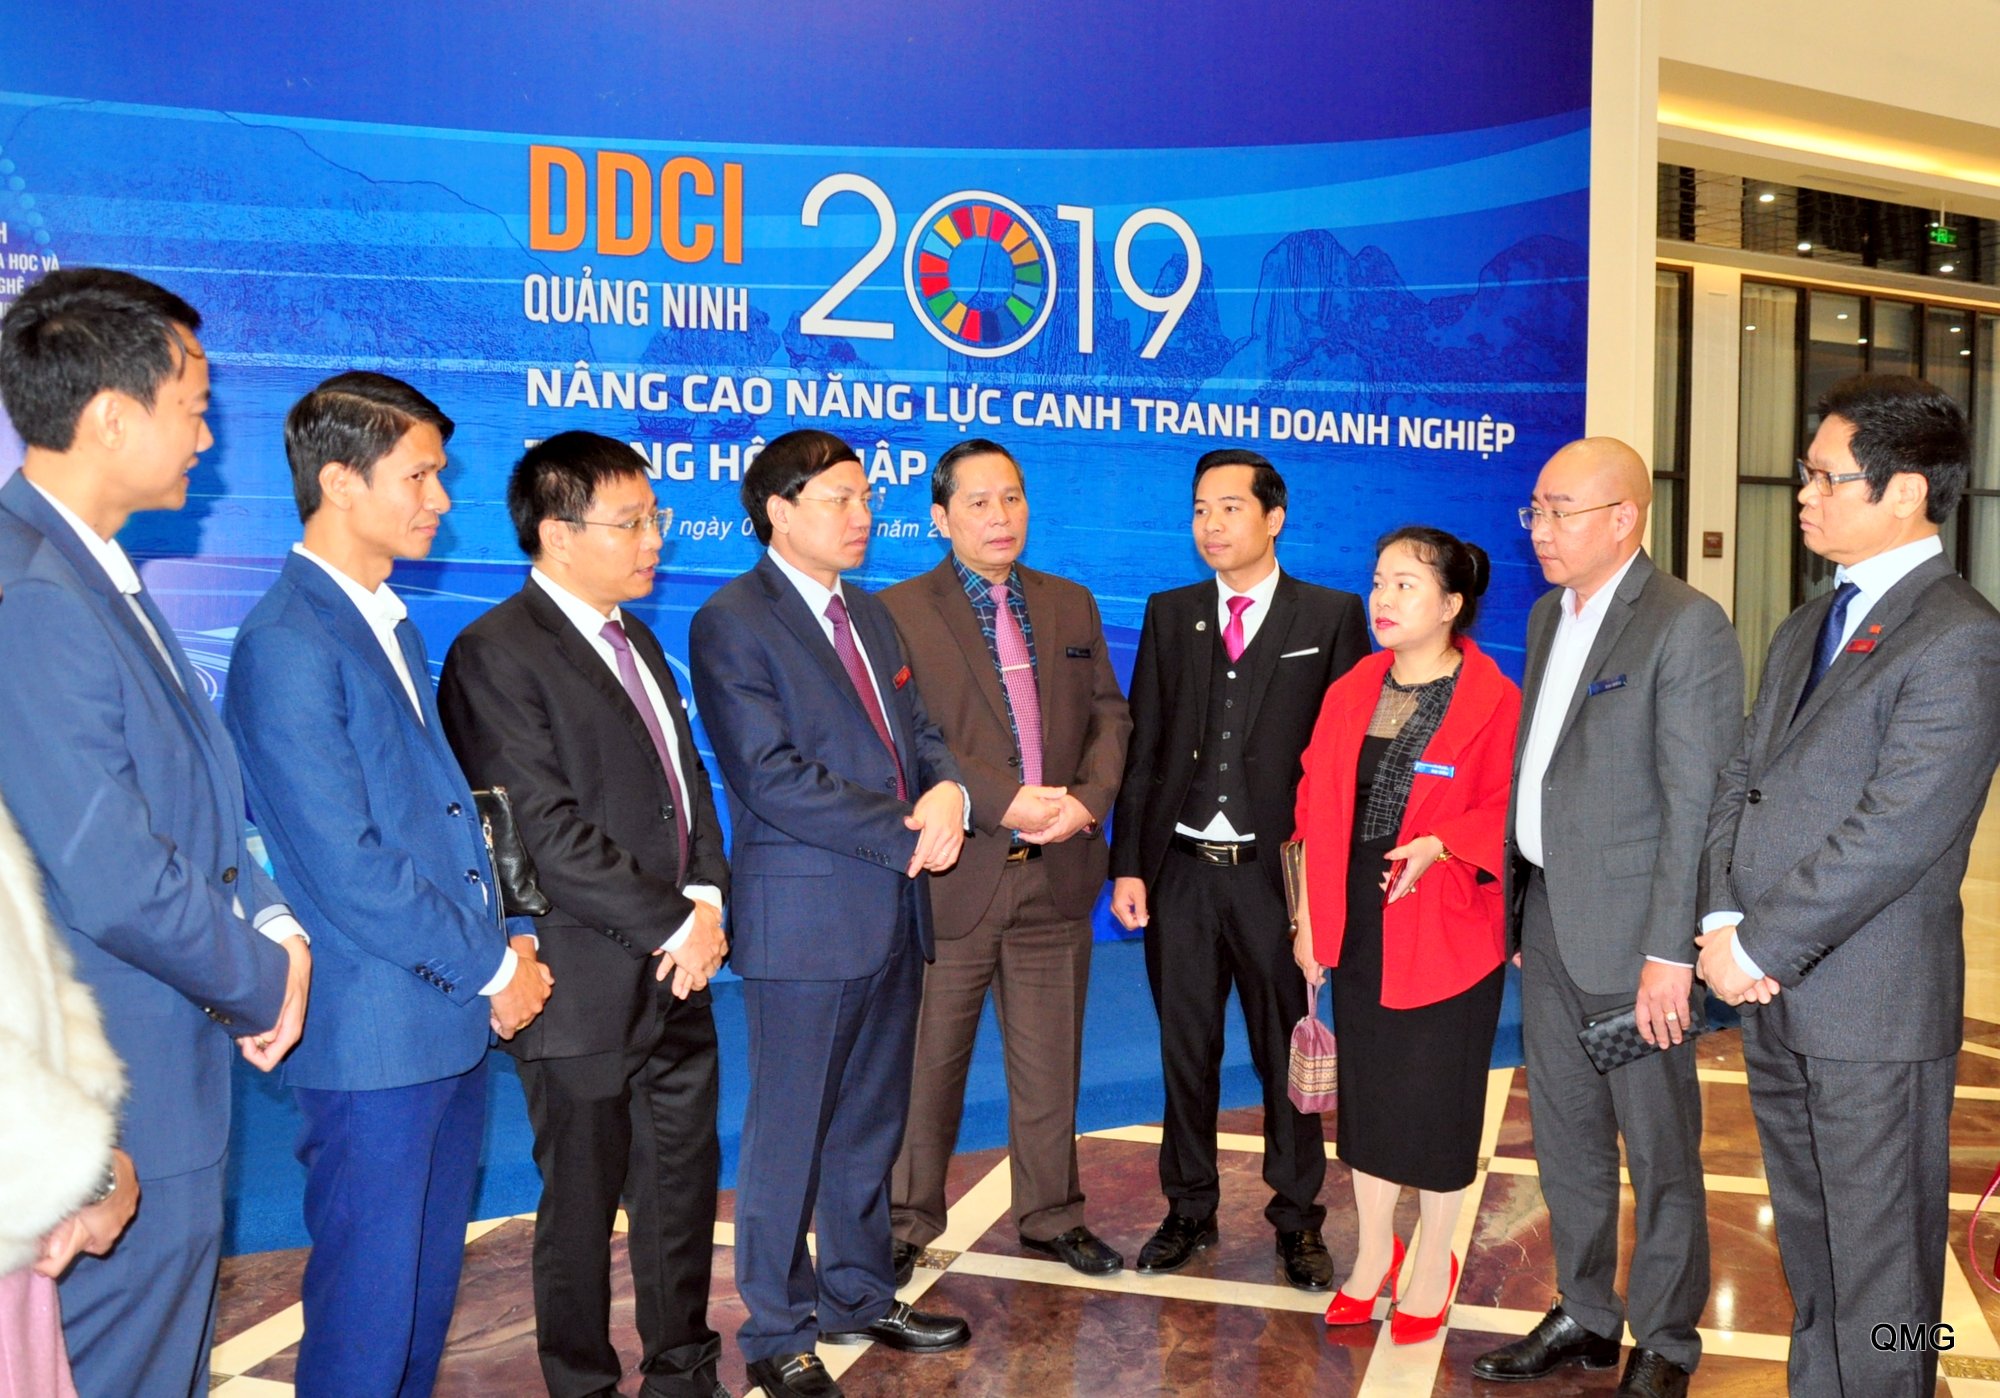 Các đồng chí lãnh đạo tỉnh trò chuyện với đại diện các doanh nghiệp bên lề lễ công bố DDCI tỉnh Quảng Ninh năm 2019 vừa được tổ chức ngày 